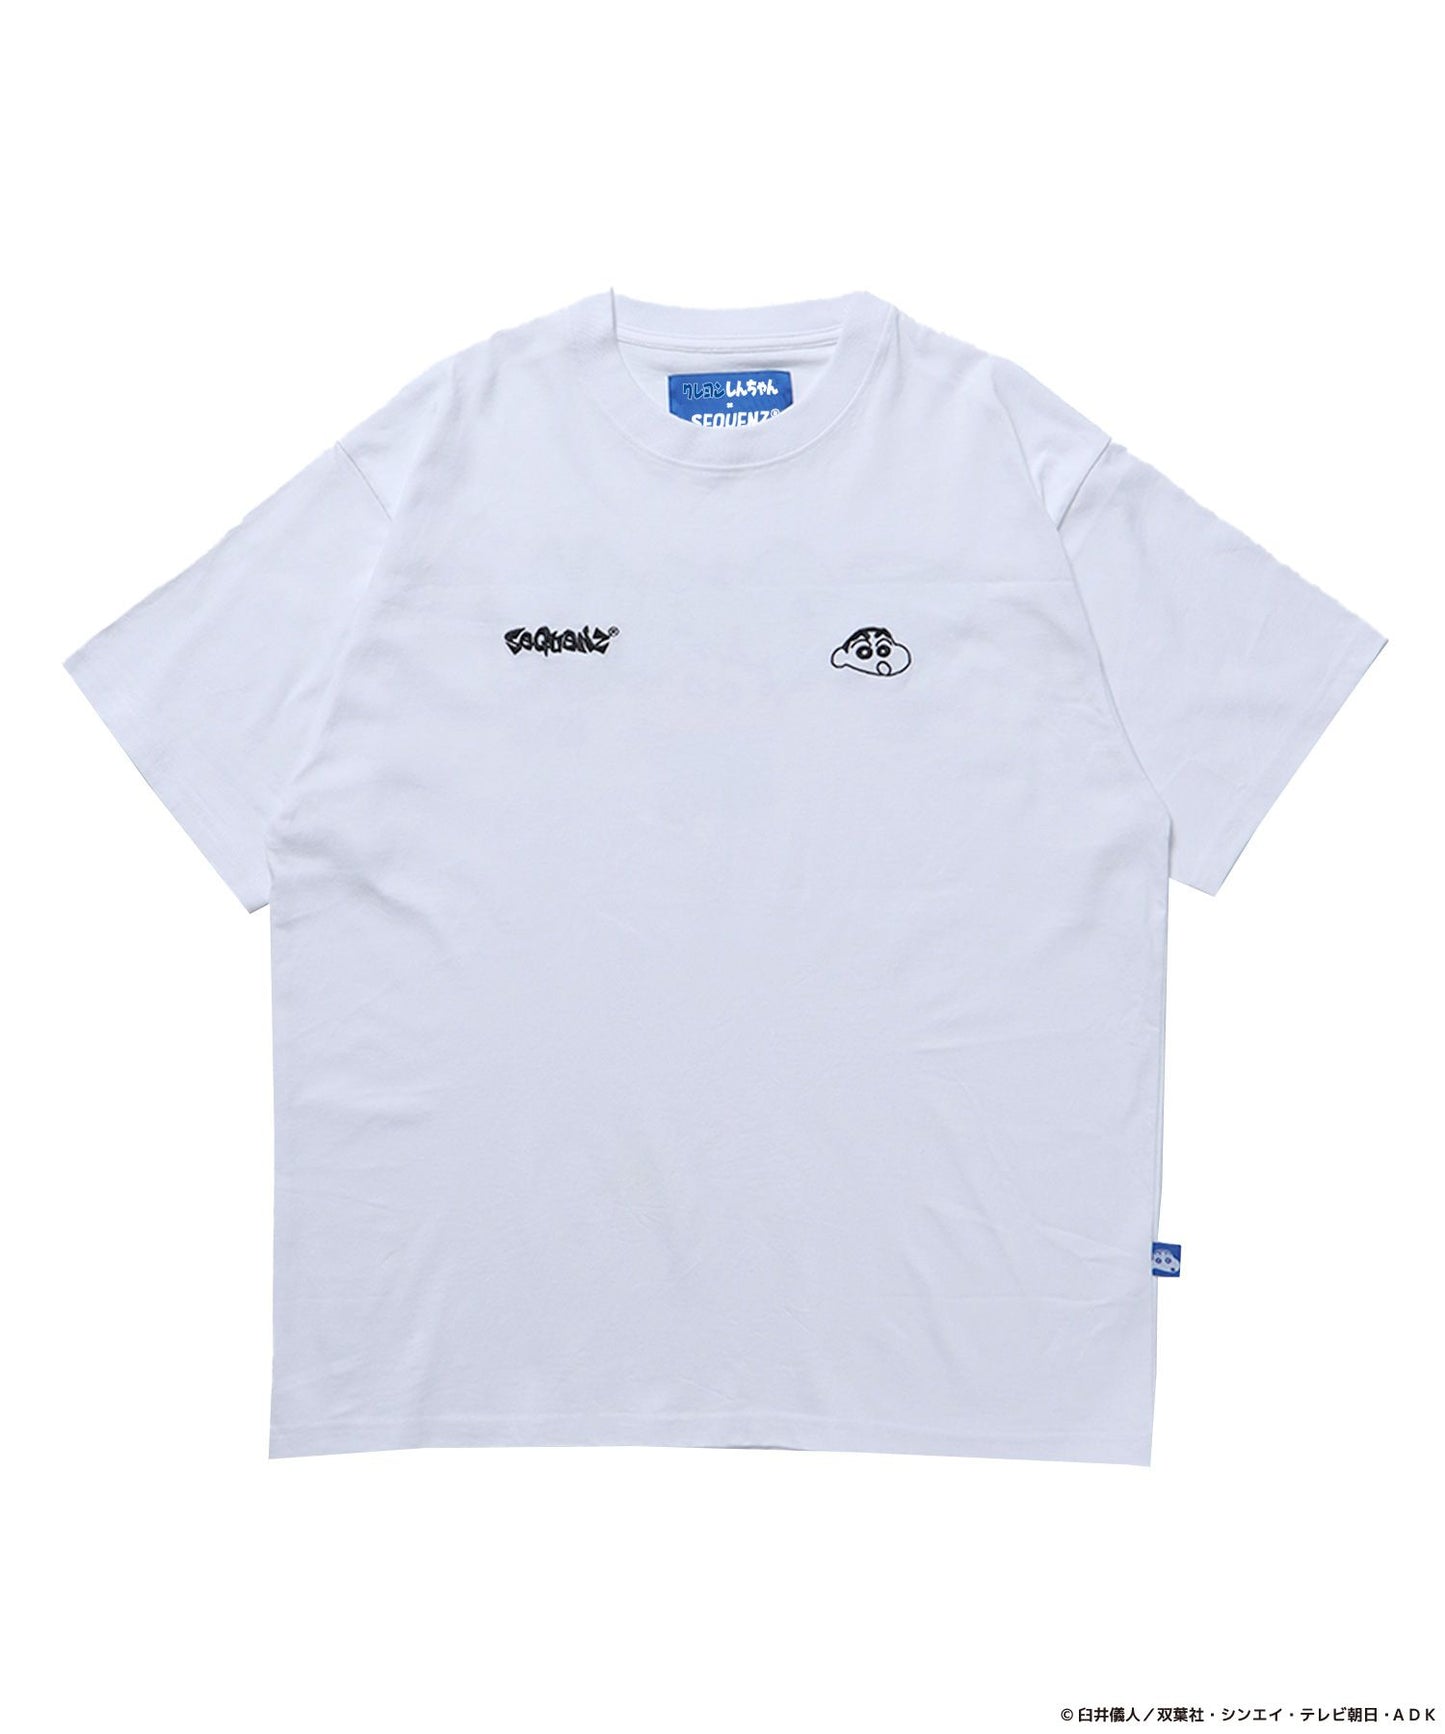 【SEQUENZ】CS×SQNZ GRAFFITI S/S TEE / クレヨンしんちゃん 半袖Tシャツ クルーネック ワンポイント バックプリント 刺繍  ホワイト